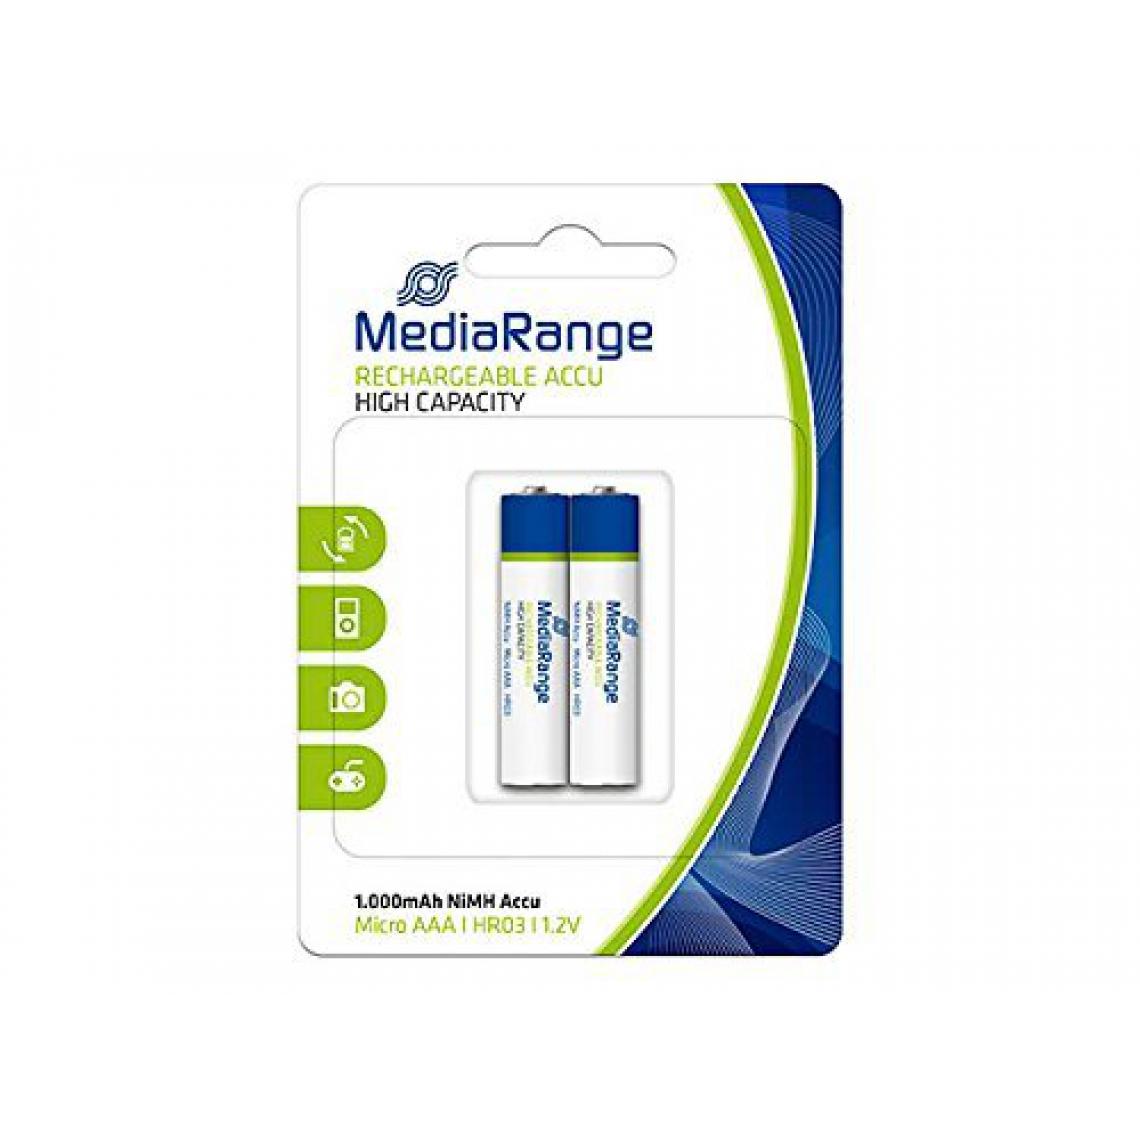 Mediarange - Pack de 2 piles rechargeables Mediarange haute capacité NiMH Accus Micro AAA HR03 1.2V - Piles spécifiques